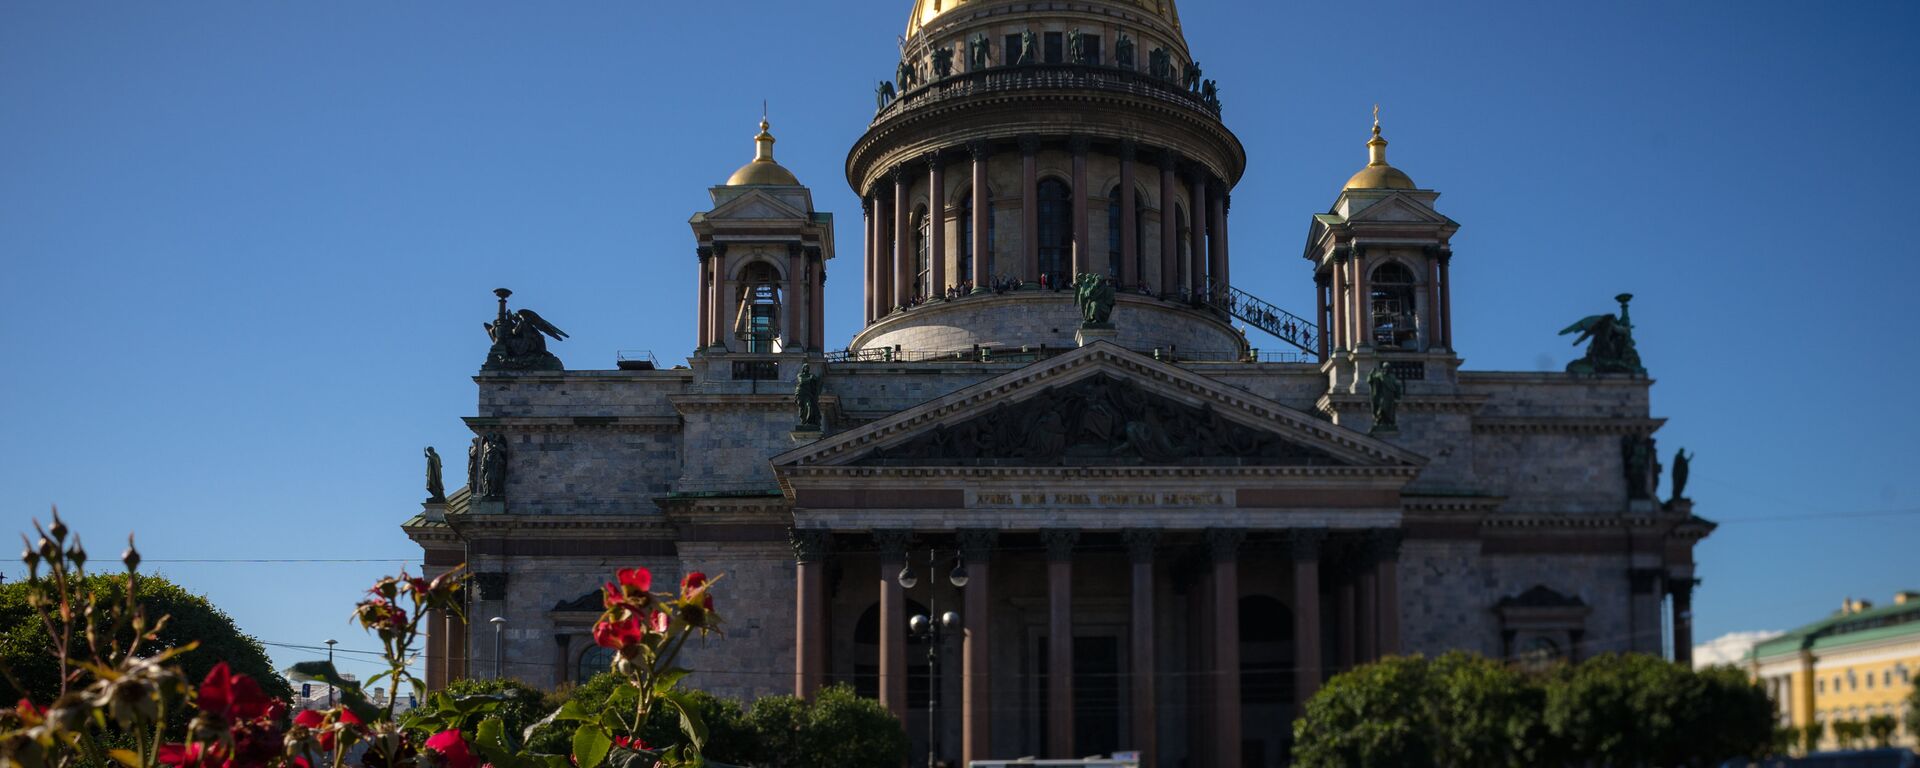 Исаакиевский собор в Санкт-Петербурге - Sputnik Грузия, 1920, 27.06.2021